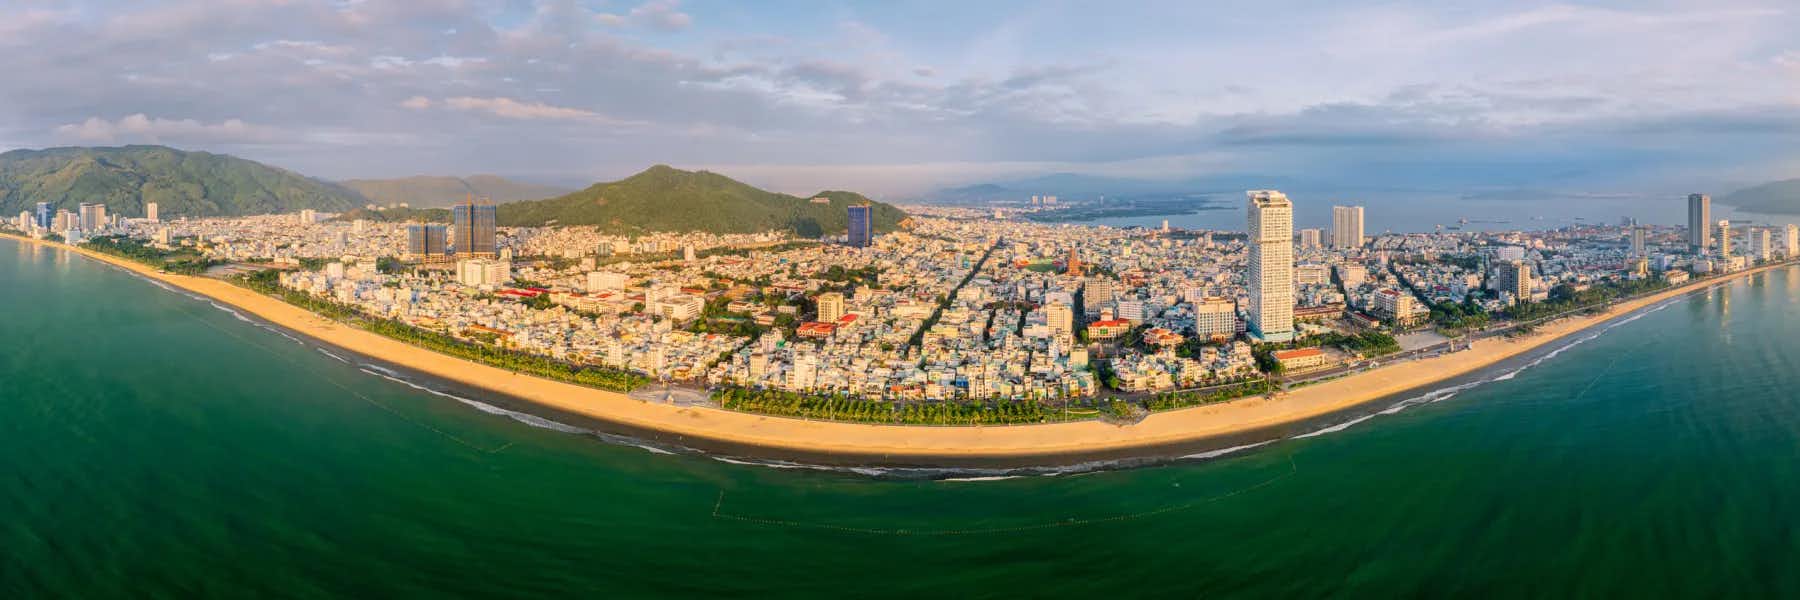 Vietnam’s Art Deco Beach on $300 a Month